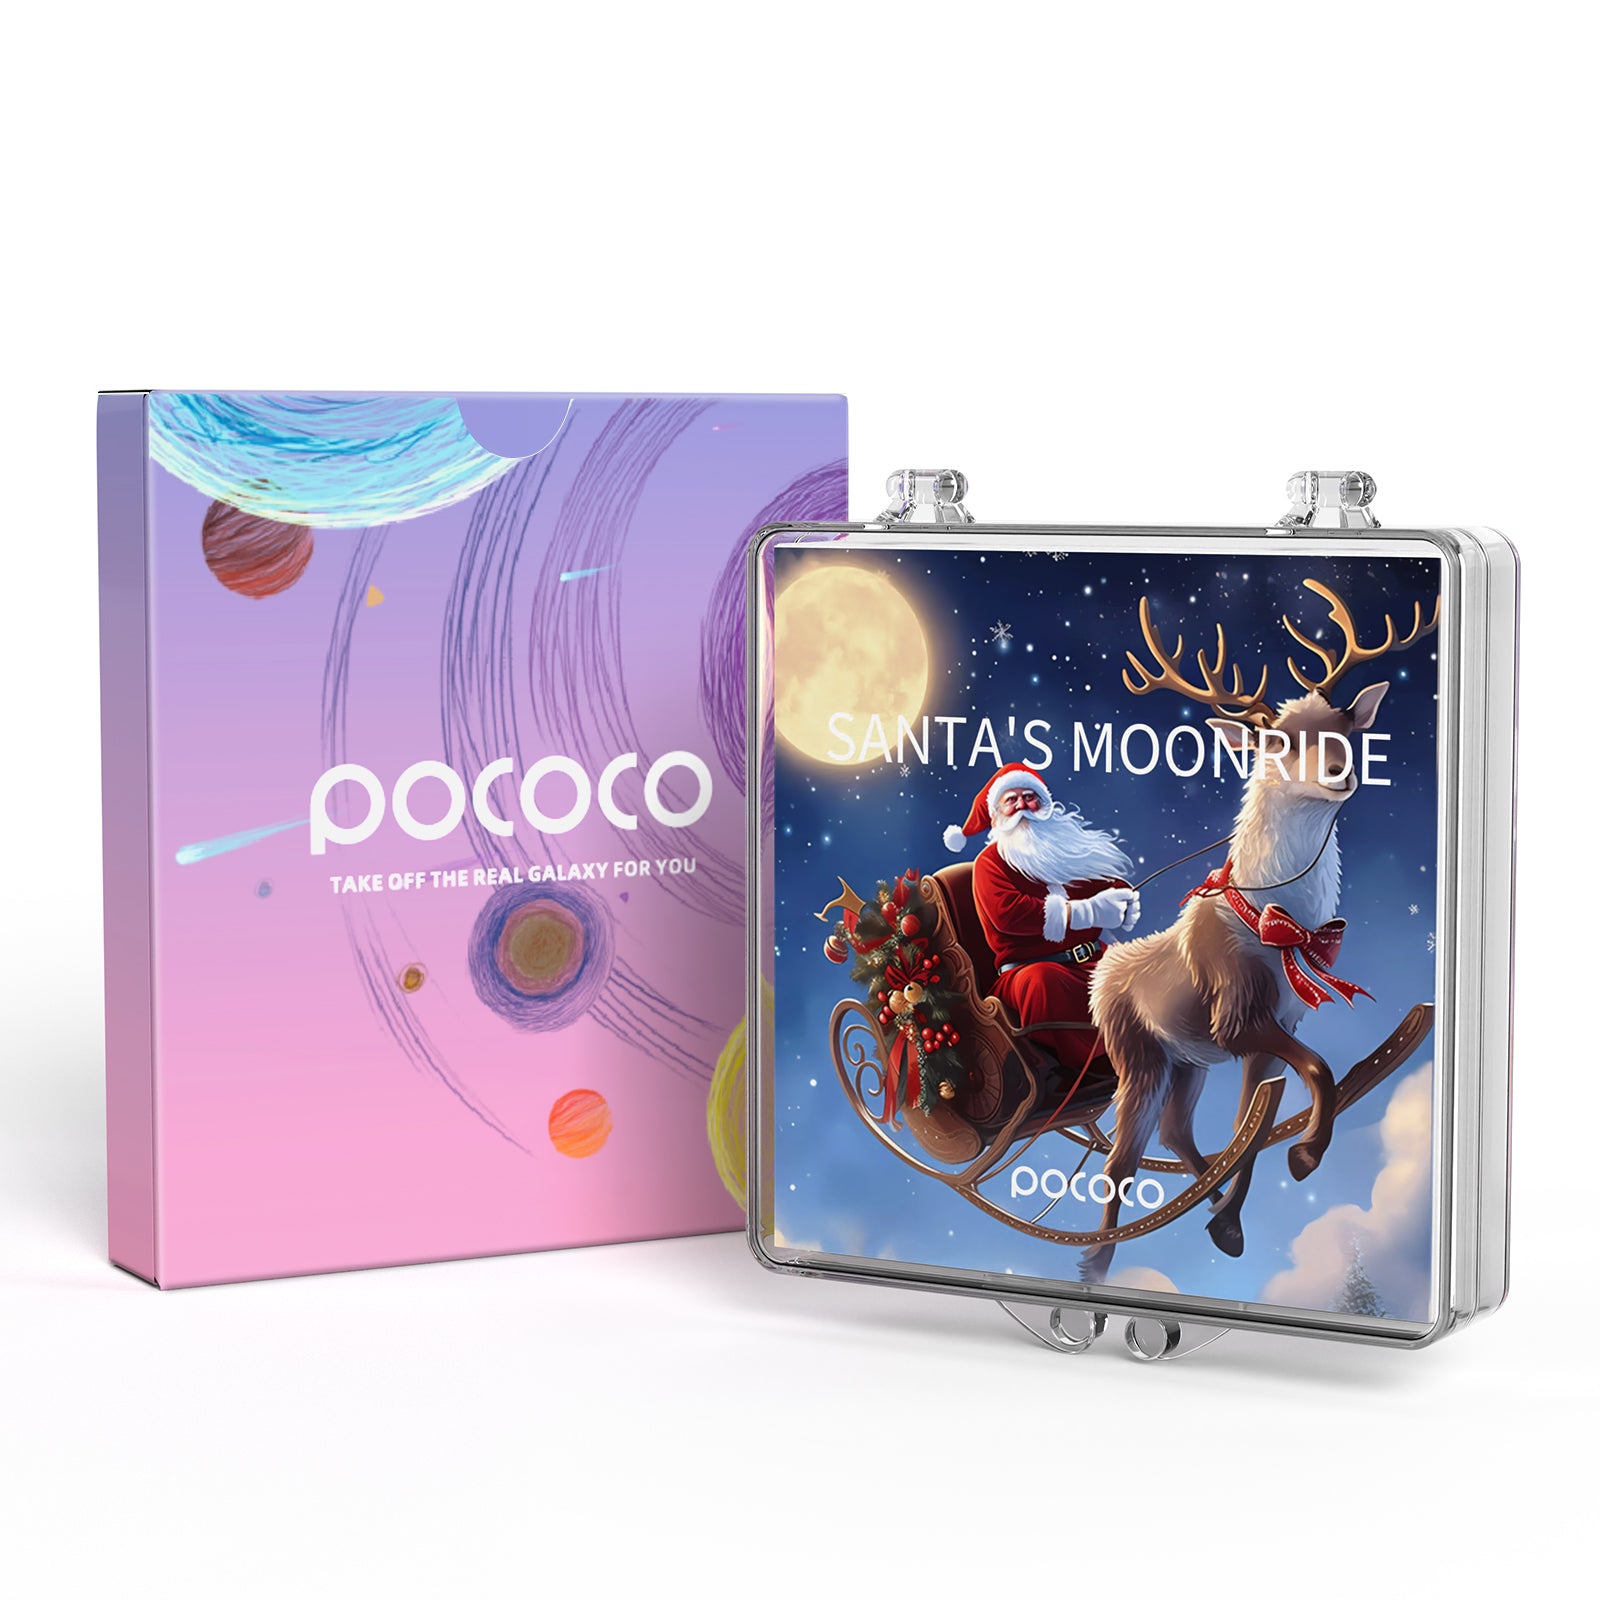 POCOCO Galaxy Projector Disc - Santa's Moonride